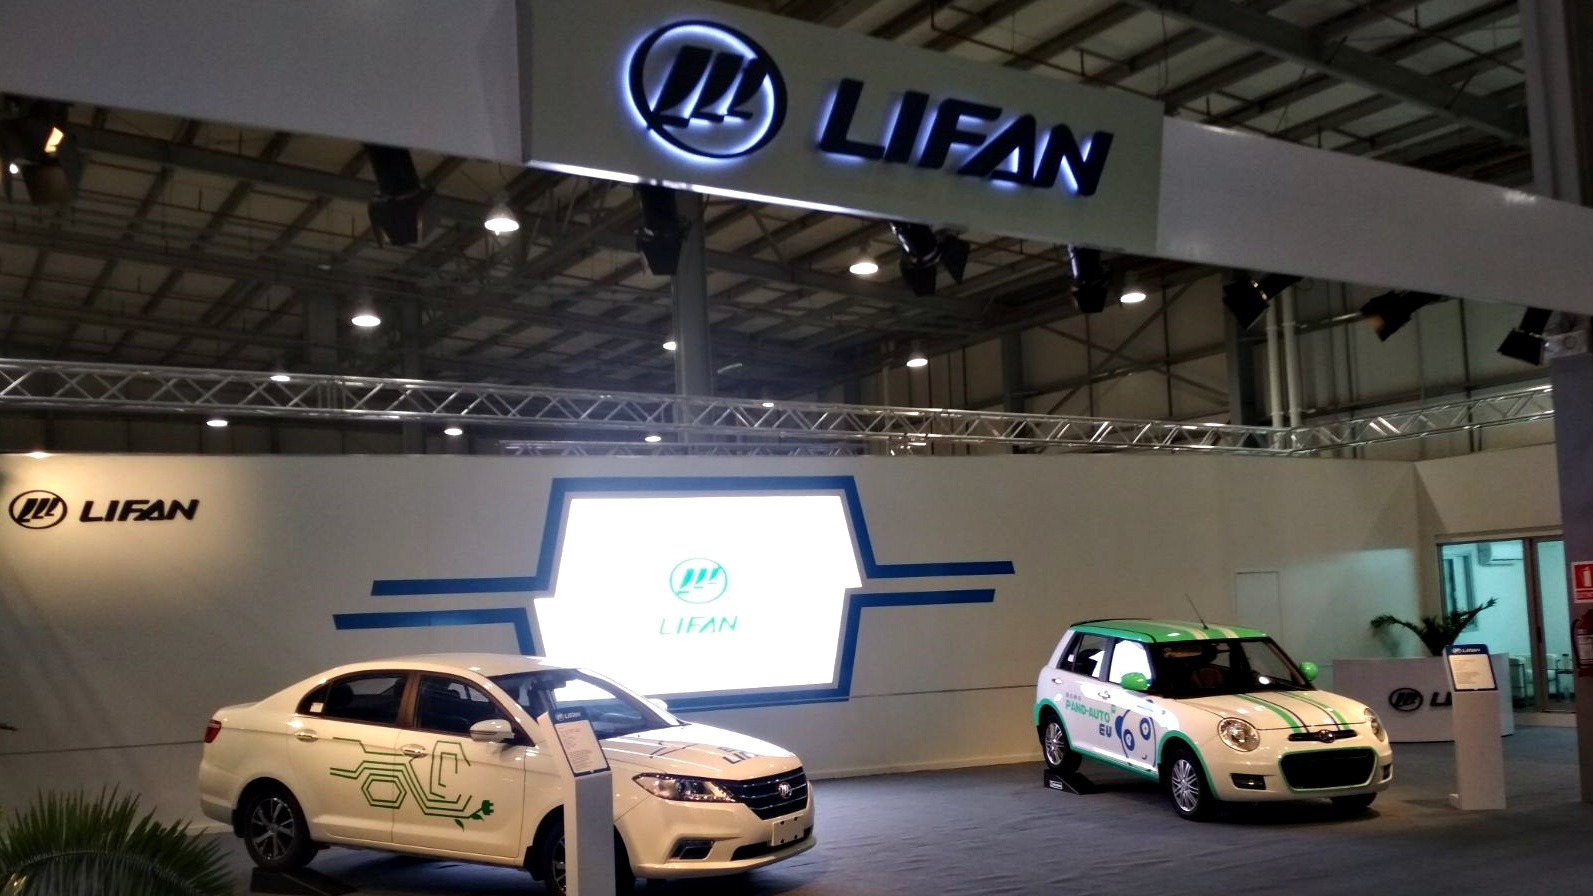  Lifan proyecta importar a Uruguay autos eléctricos con baterías intercambiables